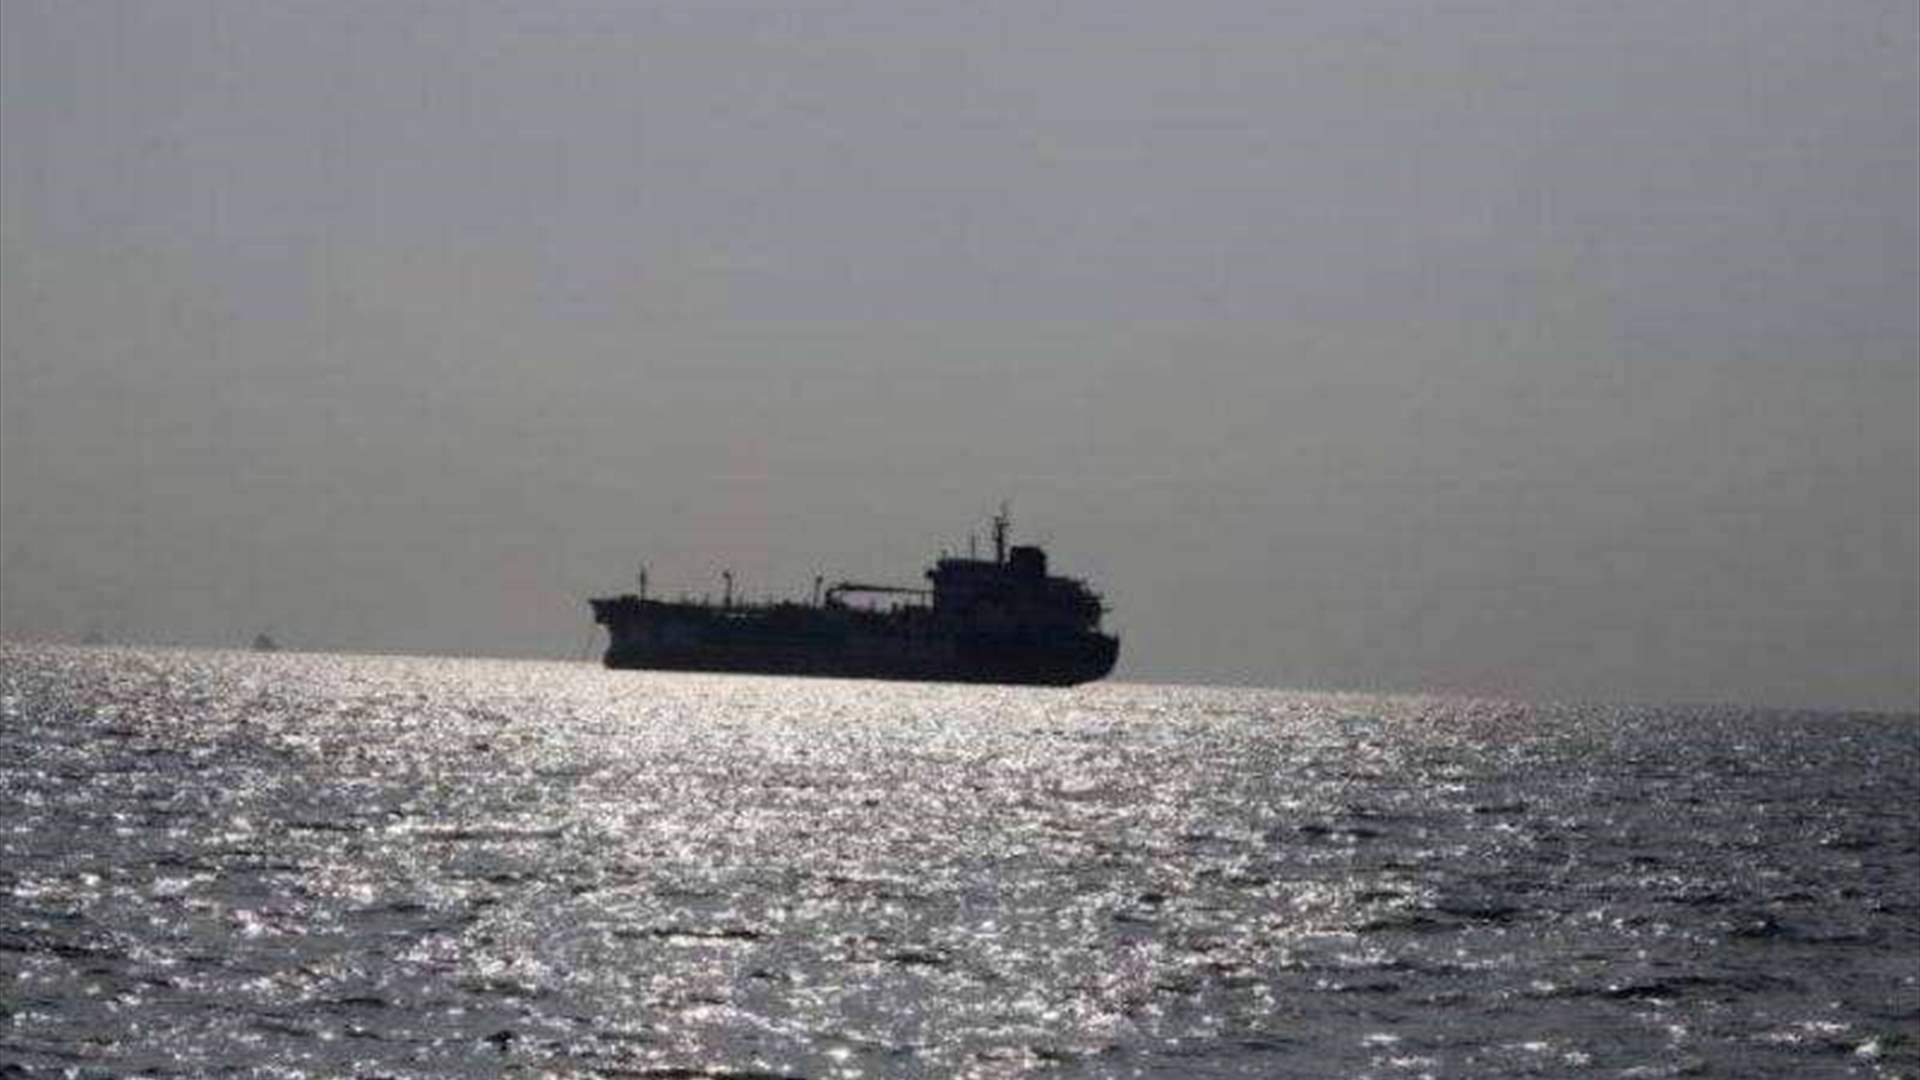 هيئة بحرية بريطانية تتلقى تقريرا عن واقعة على بعد 83 ميلا بحريا من عدن باليمن